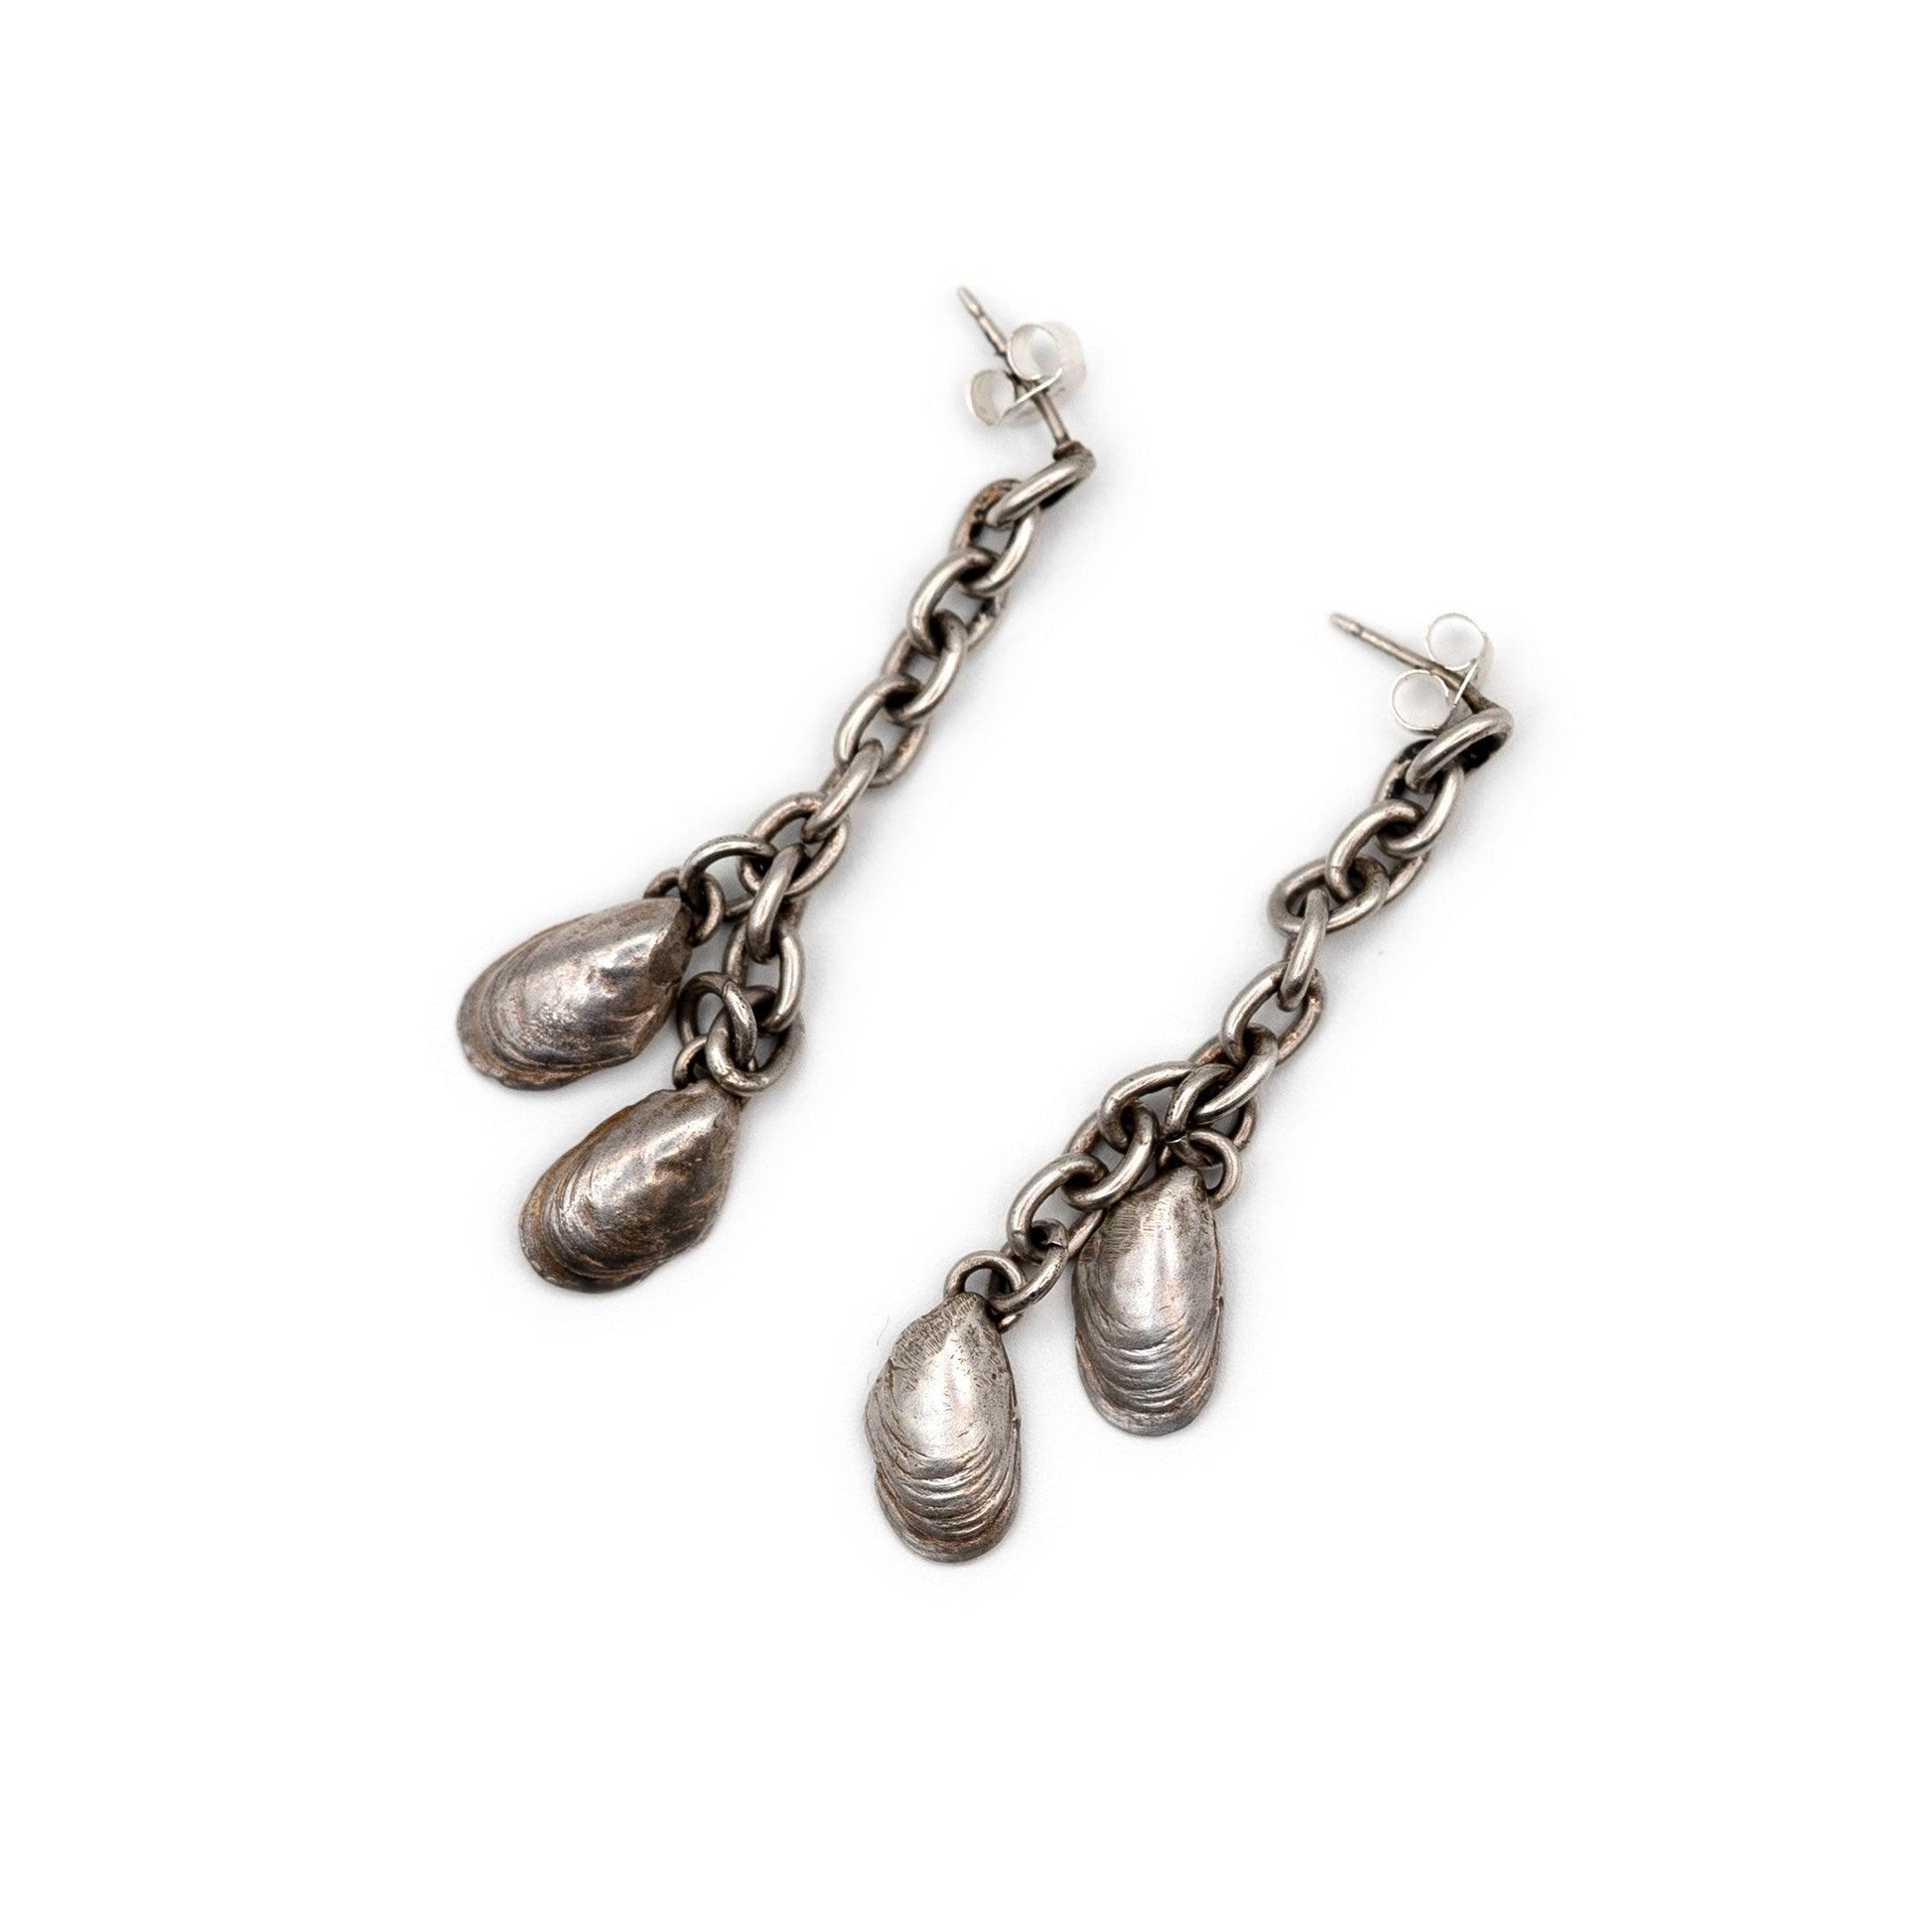 Mussel Chain Earrings - Deodata Jewelry Design